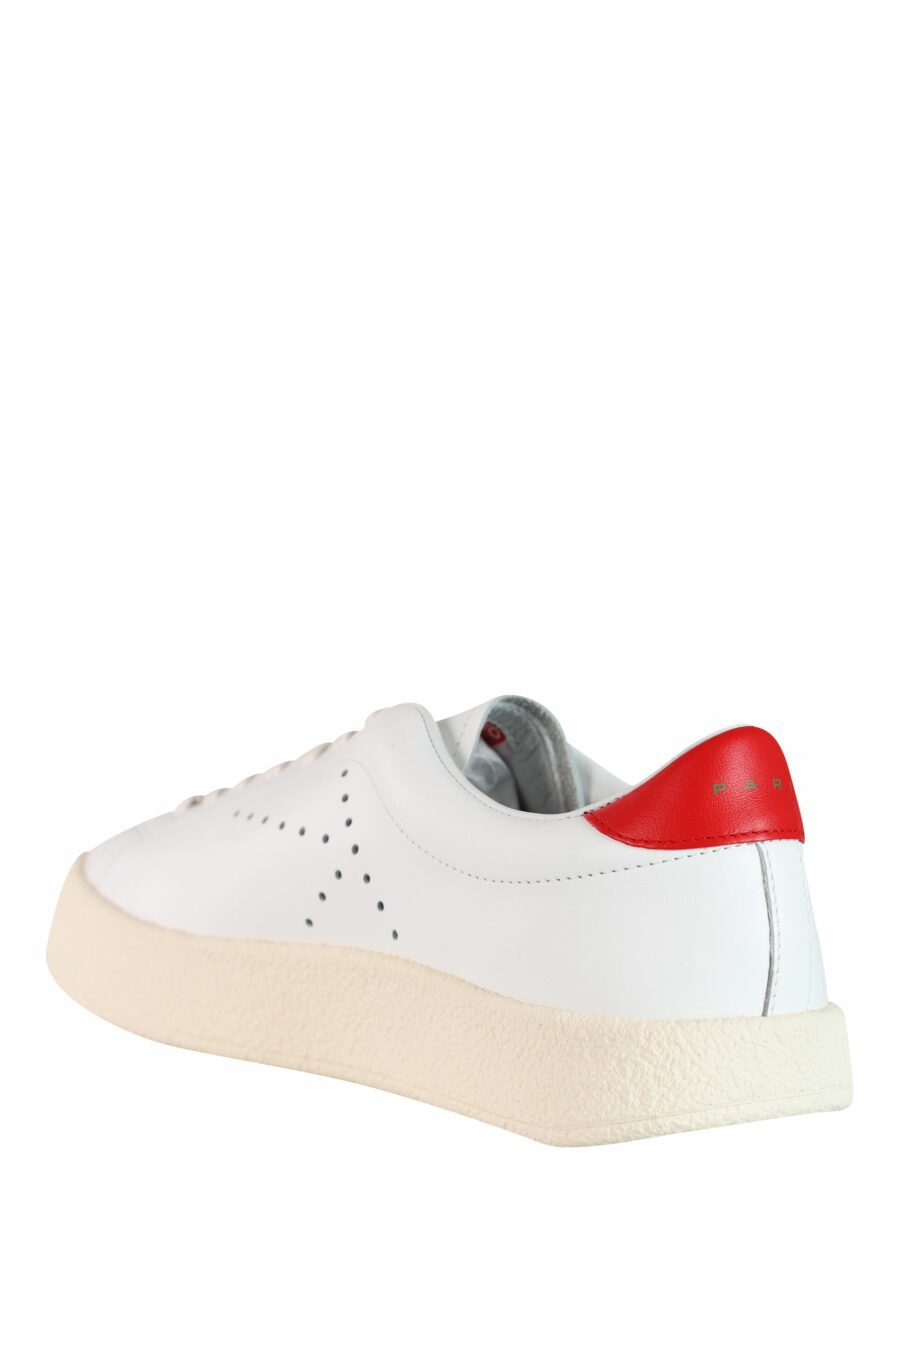 Zapatillas blancas "kenzoswing" con detalle rojo y logo - IMG 3554